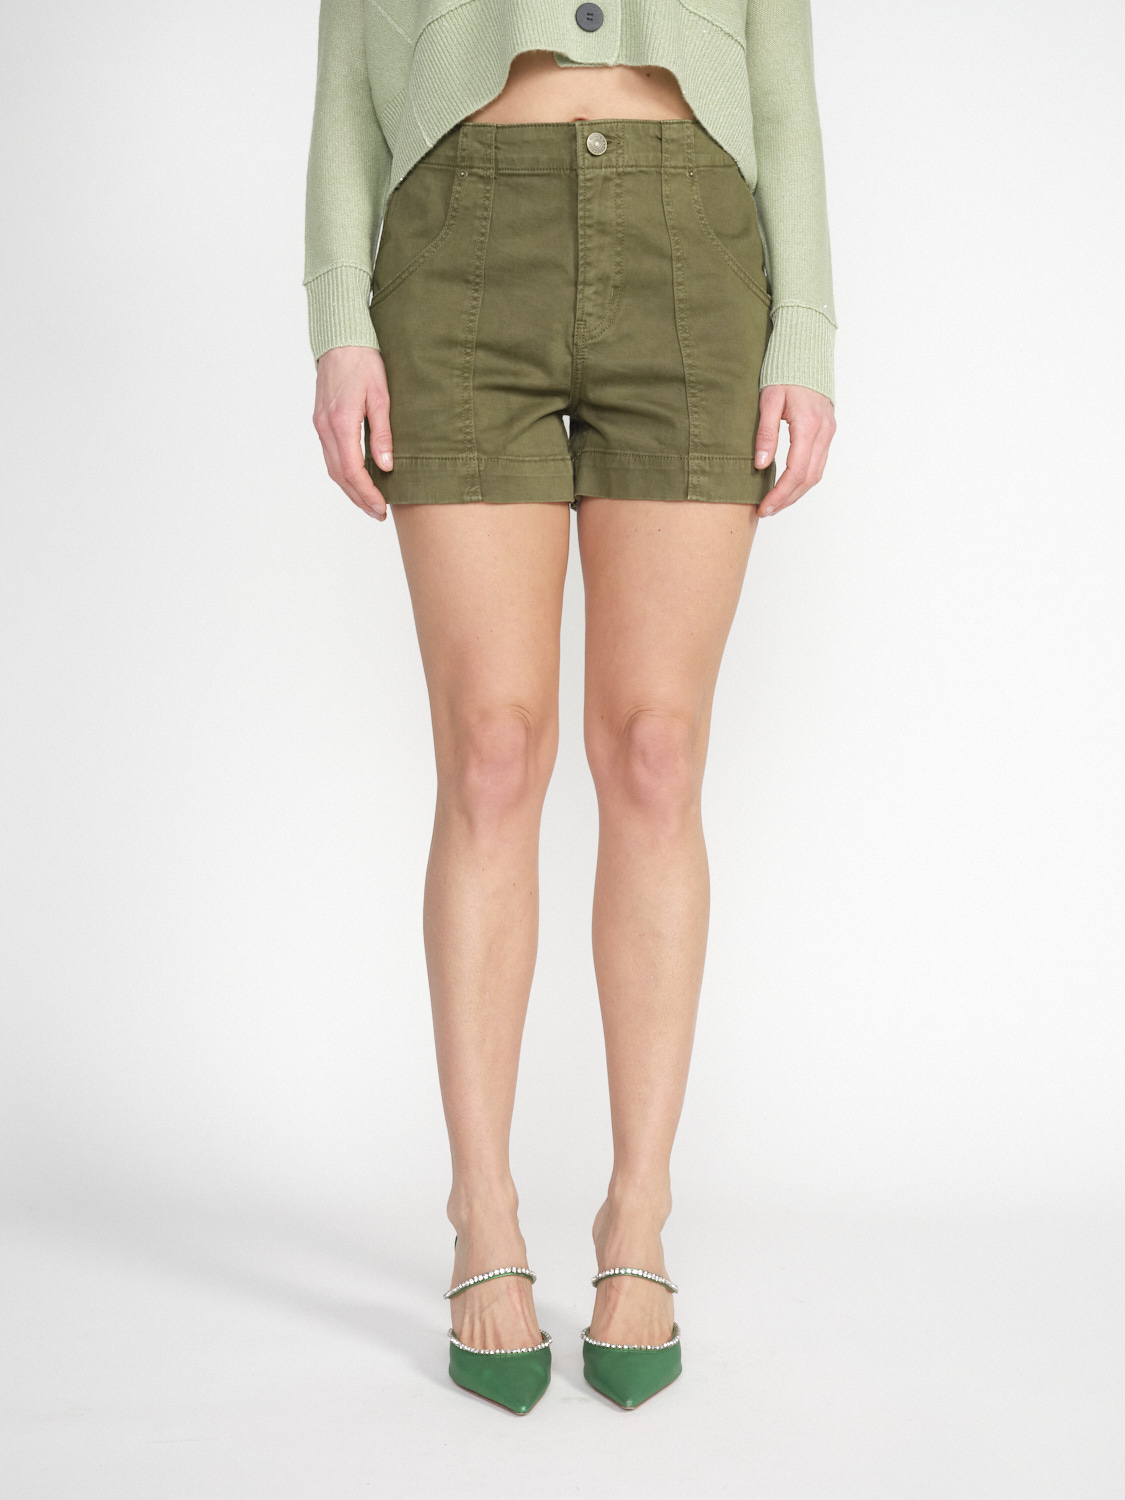 Frame Utility Shorts – Stretchige Shorts aus Baumwolle   khaki 27